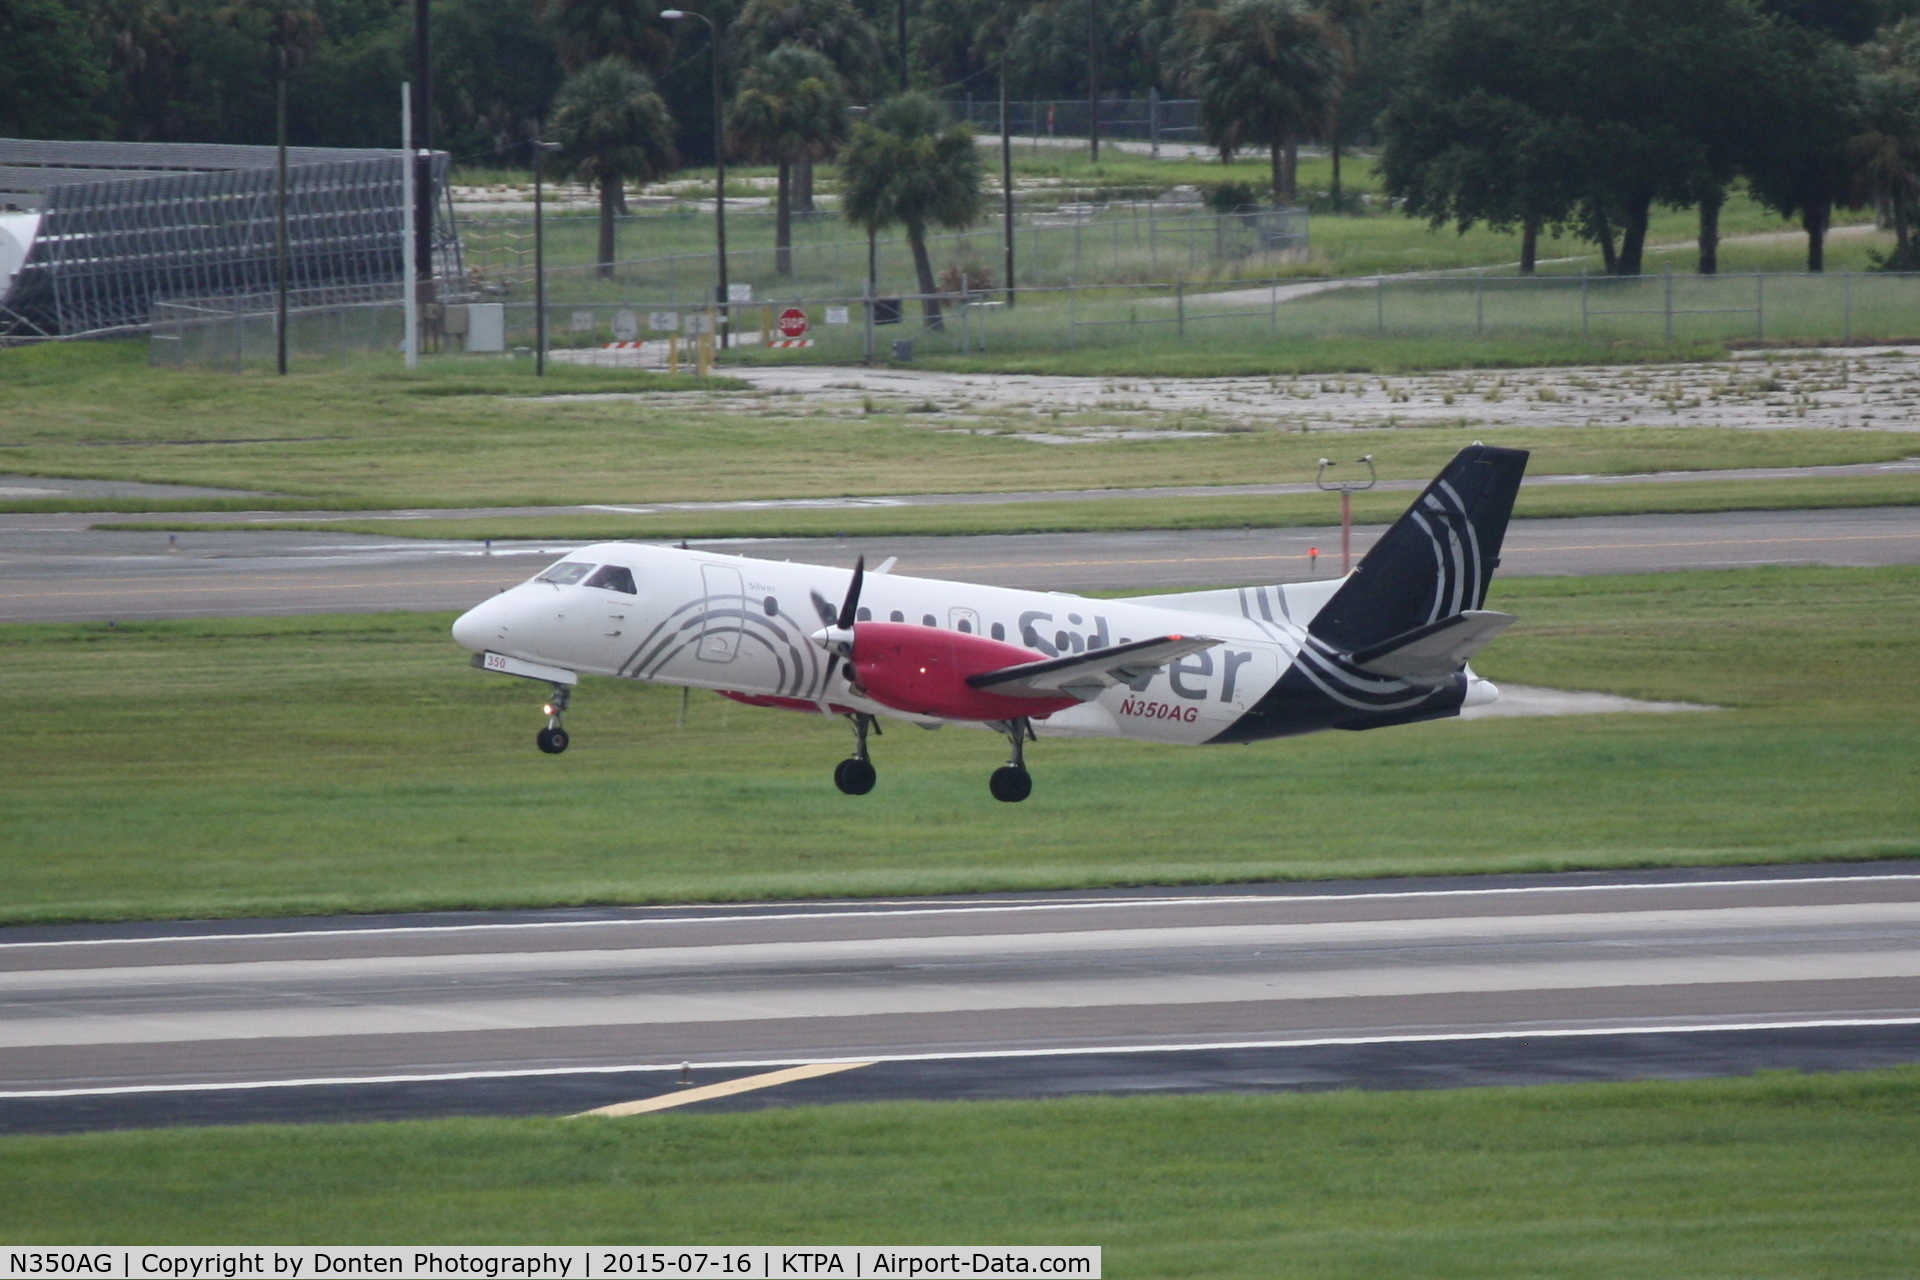 N350AG, 1998 Saab 340B+ C/N 340B-450, Silver Flight 93 (N350AG) departs Tampa International Airport enroute to Hollywood International Airport